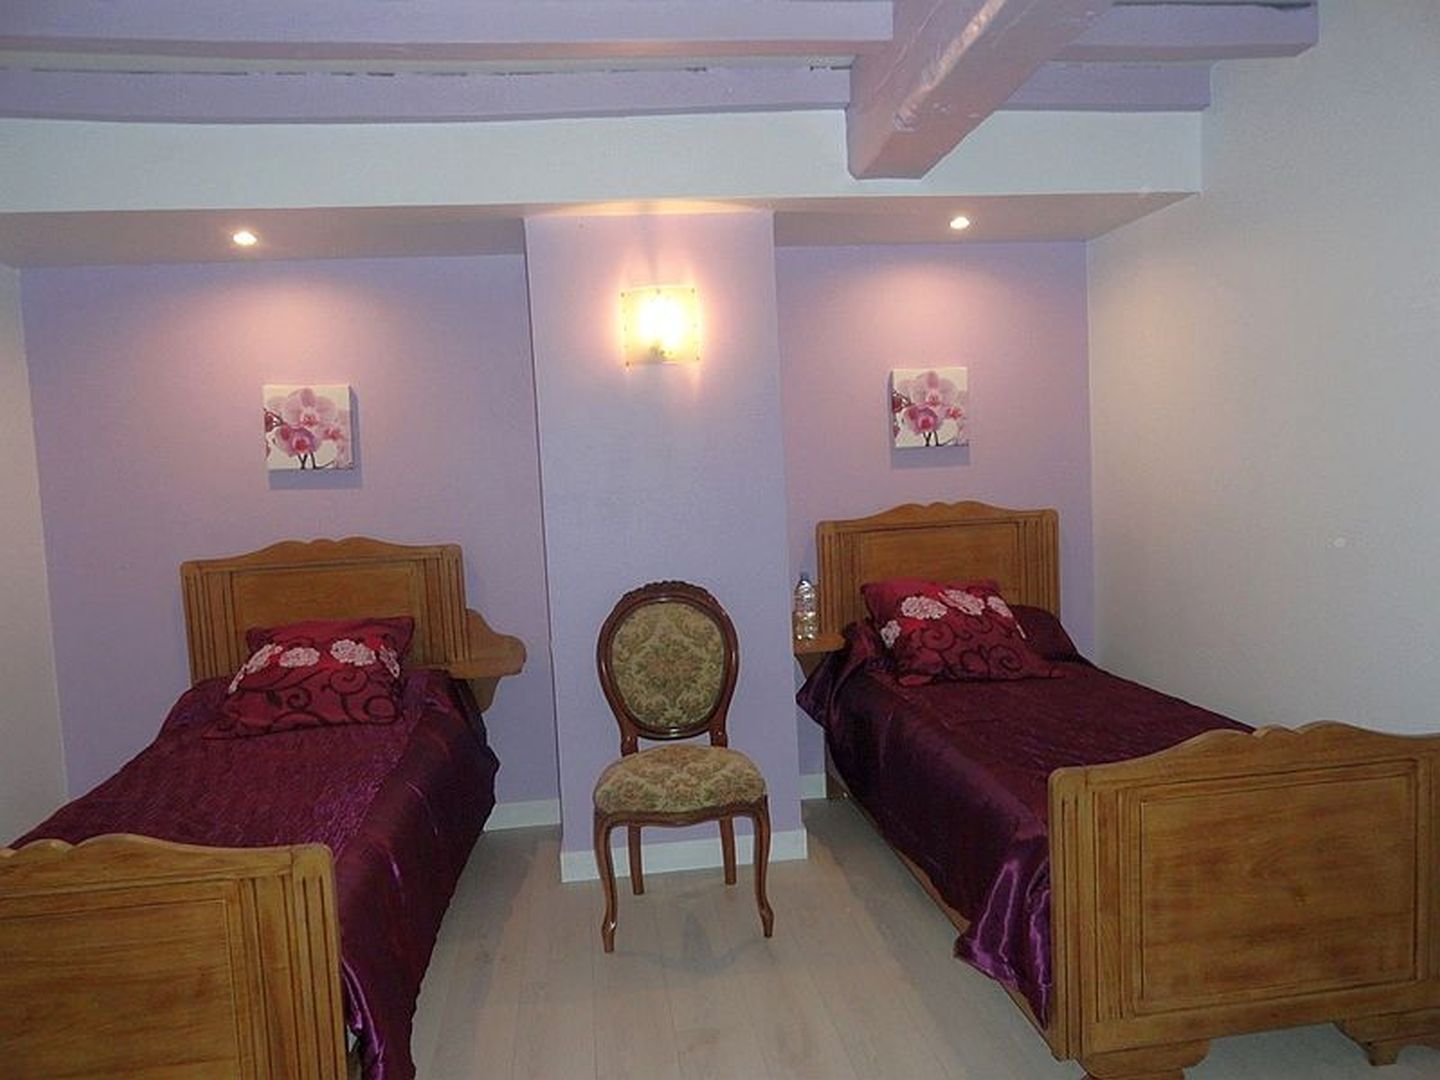 Location Loubet - Maison 10 pers - 14 - Chambre 2 lits violette - Mendive 